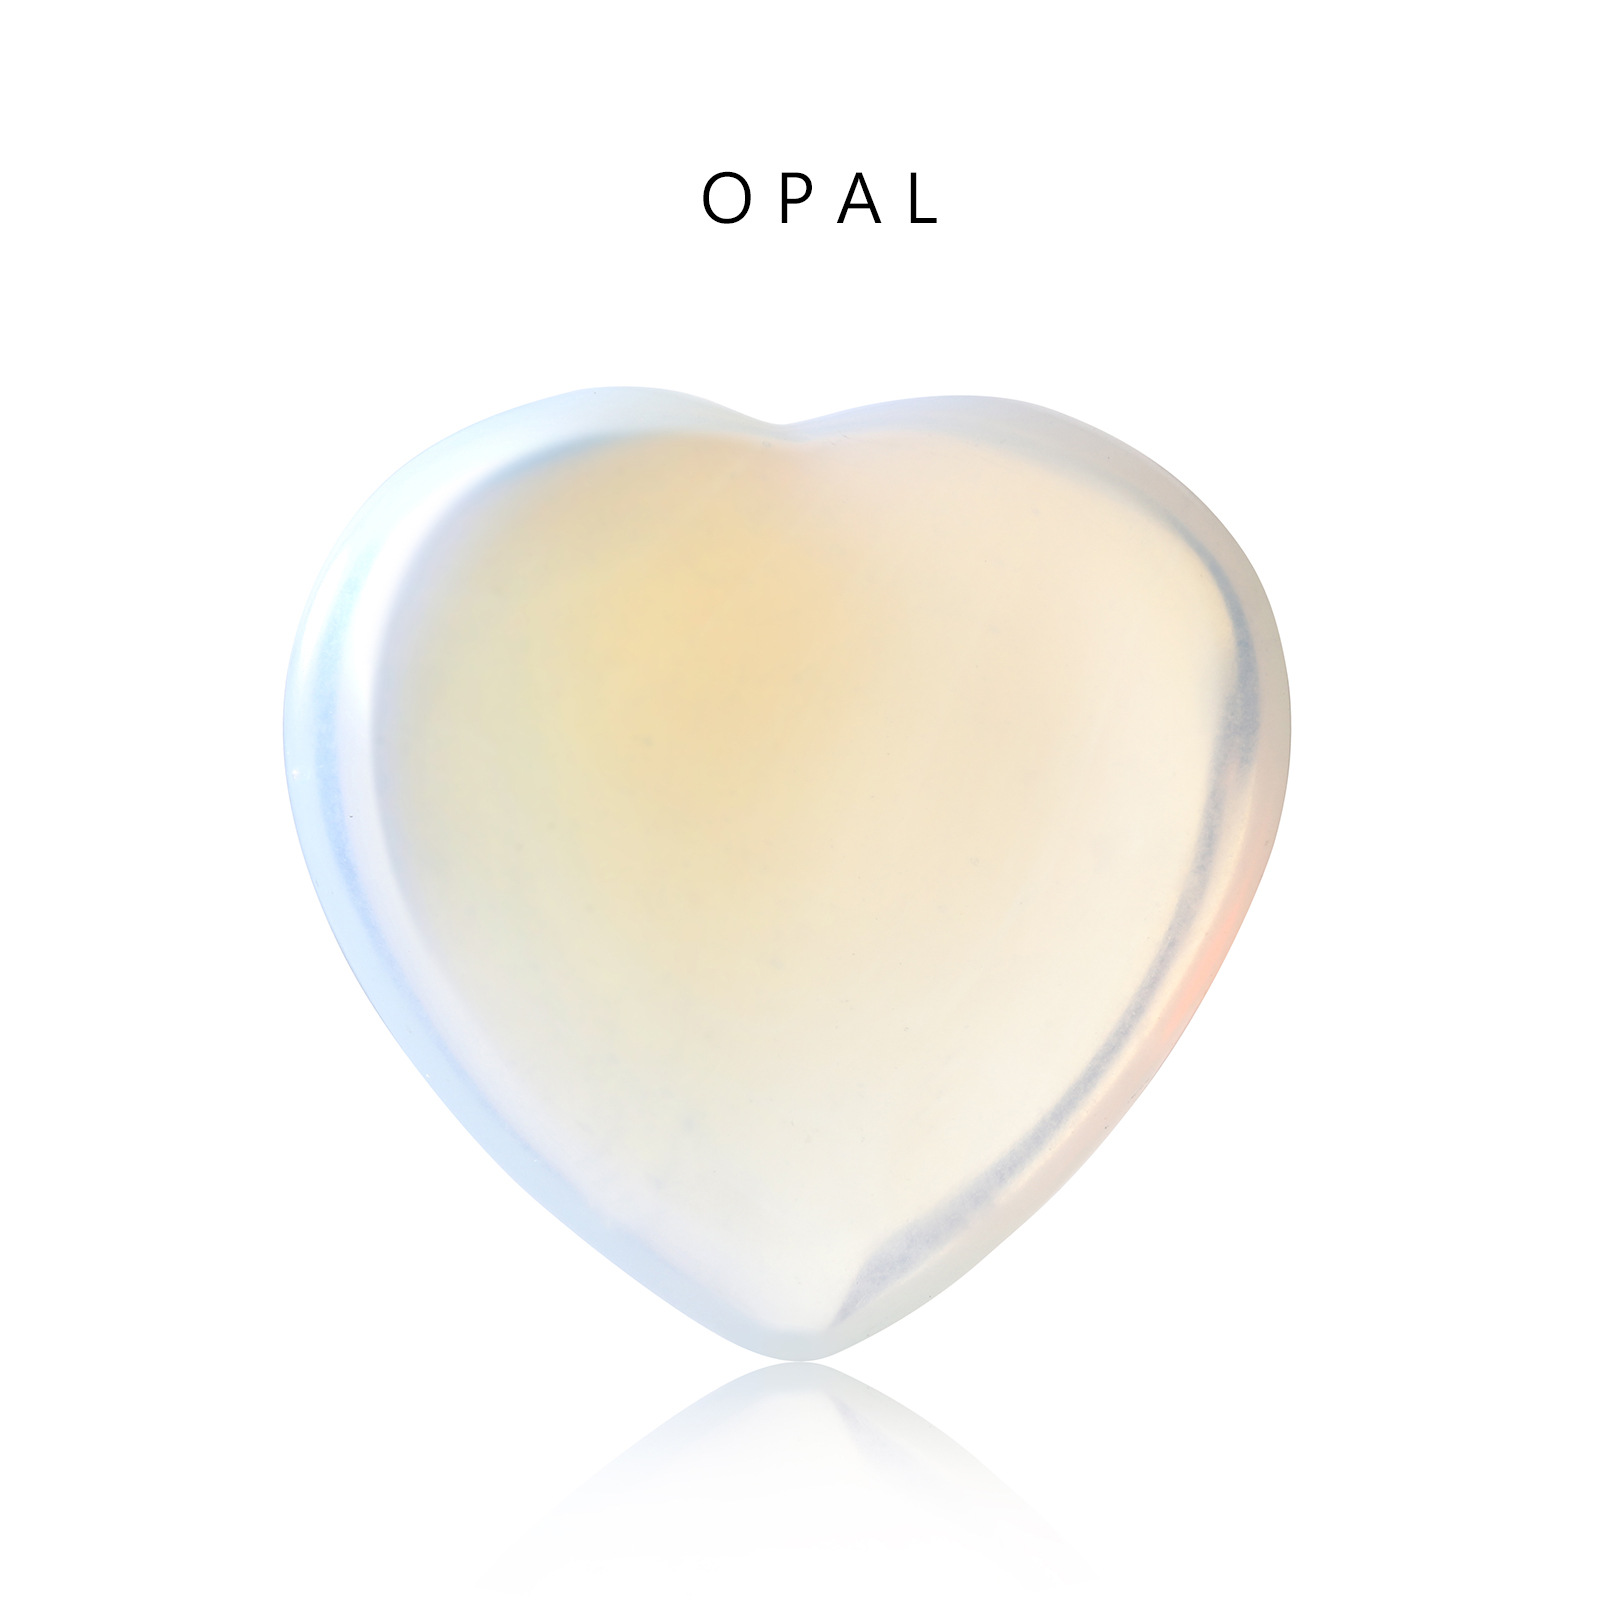 21:Meer opal